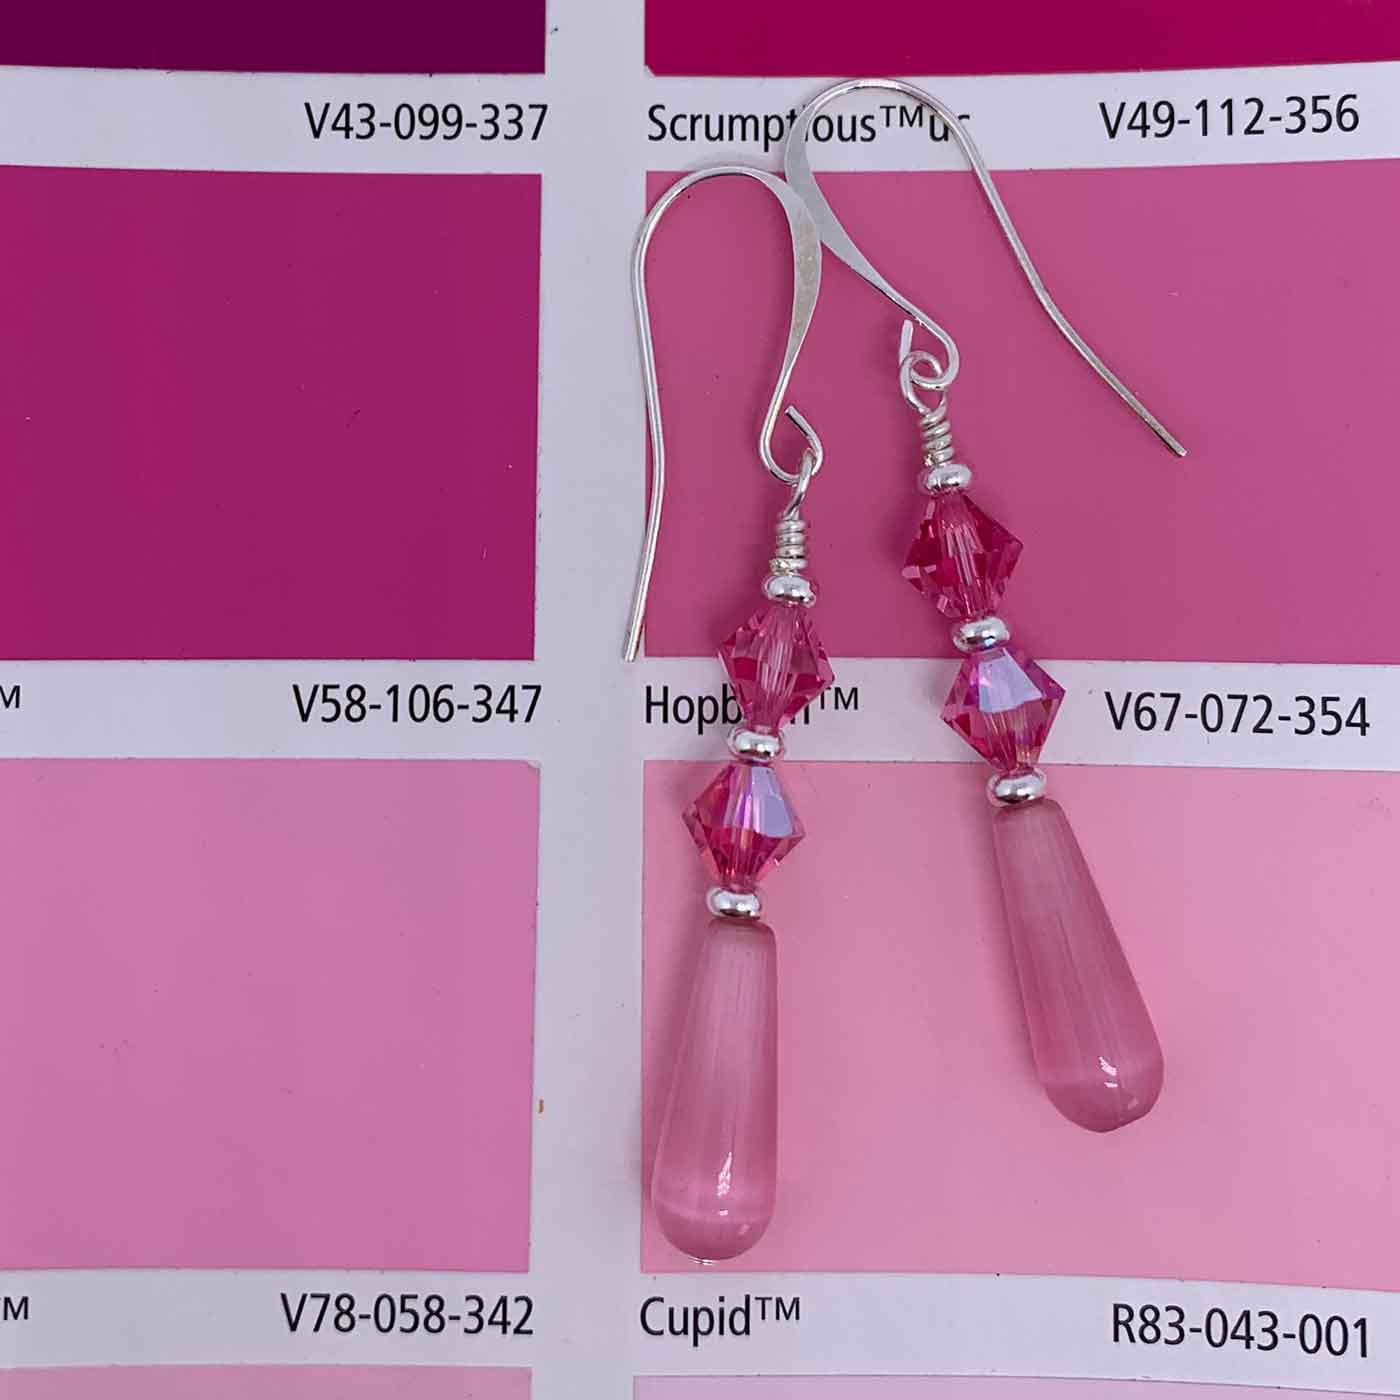 pink crystal drop earrings jewellery nz